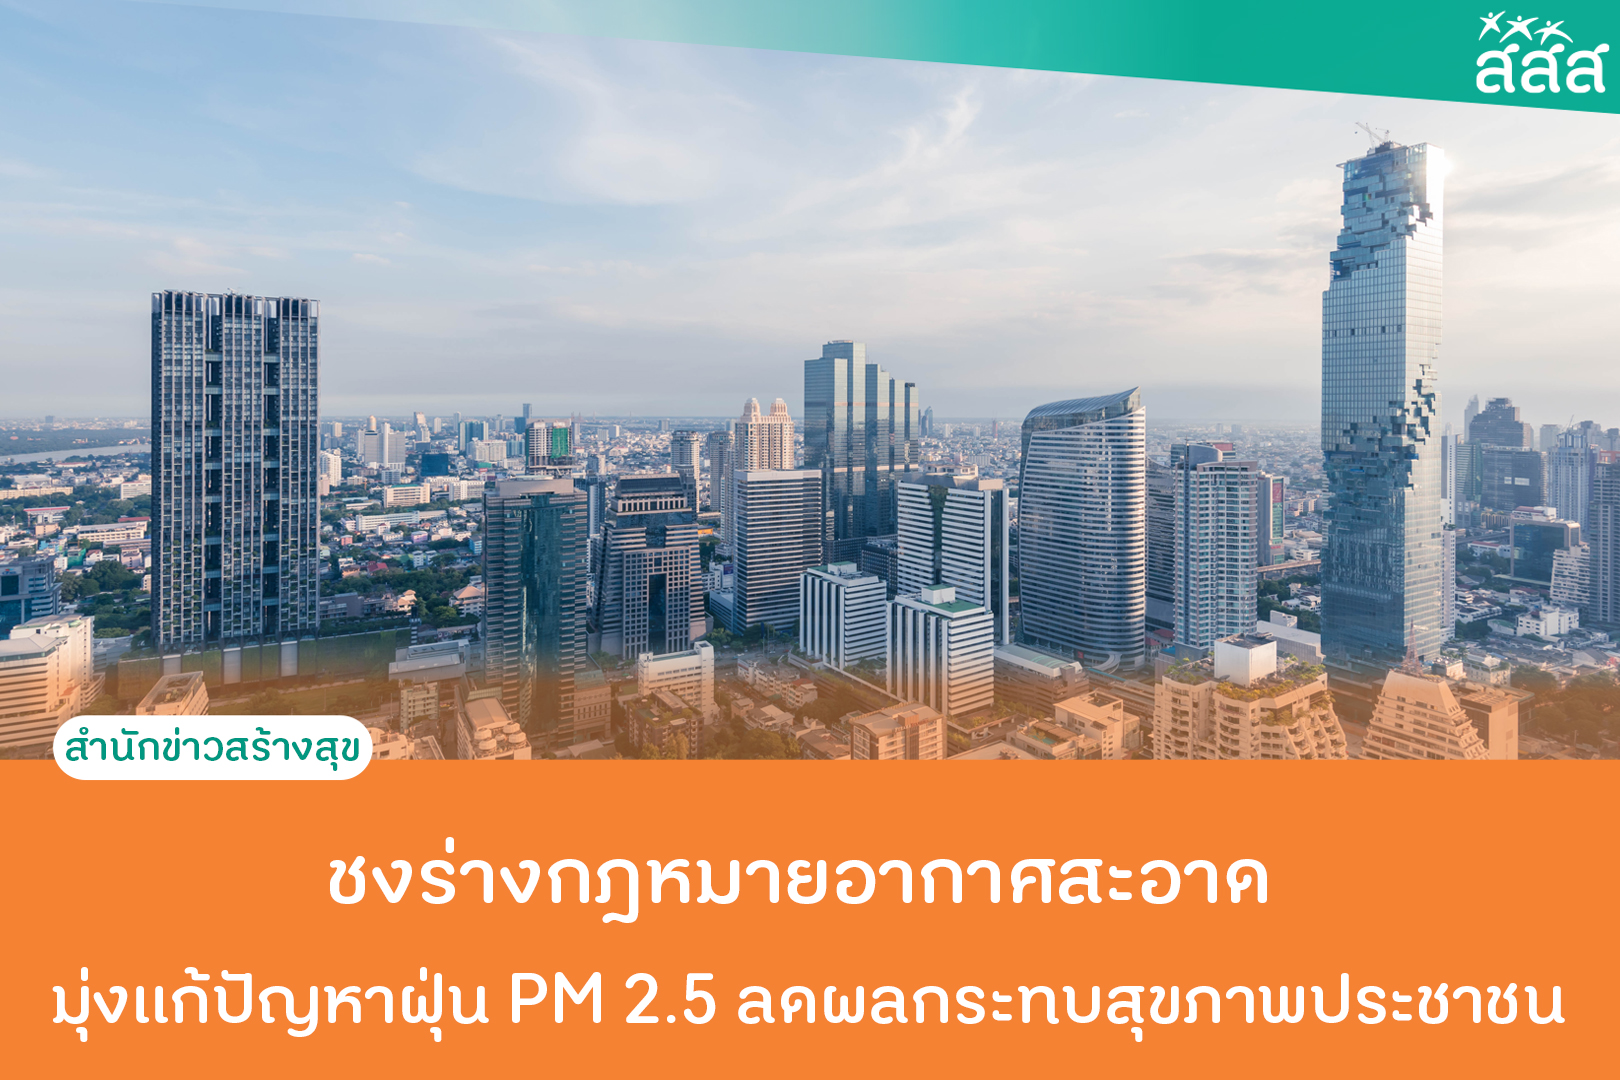 ชงร่างกฎหมายอากาศสะอาด มุ่งแก้ปัญหาฝุ่น PM 2.5 ลดผลกระทบสุขภาพประชาชน thaihealth